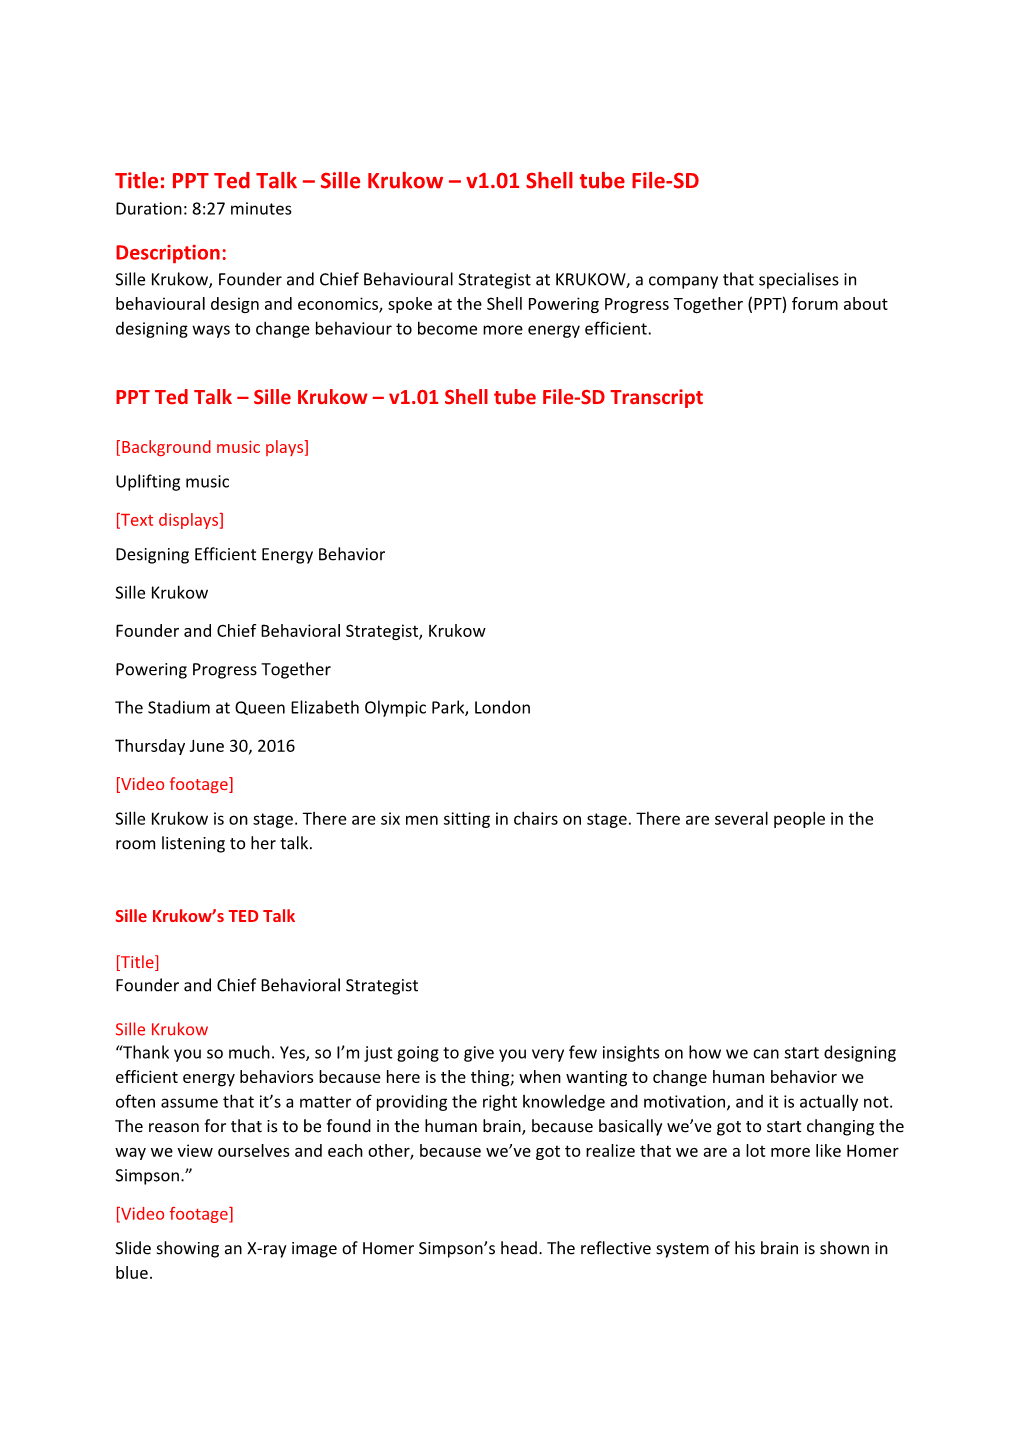 Title: PPT Ted Talk Sille Krukow V1.01 Shell Tube File-SD